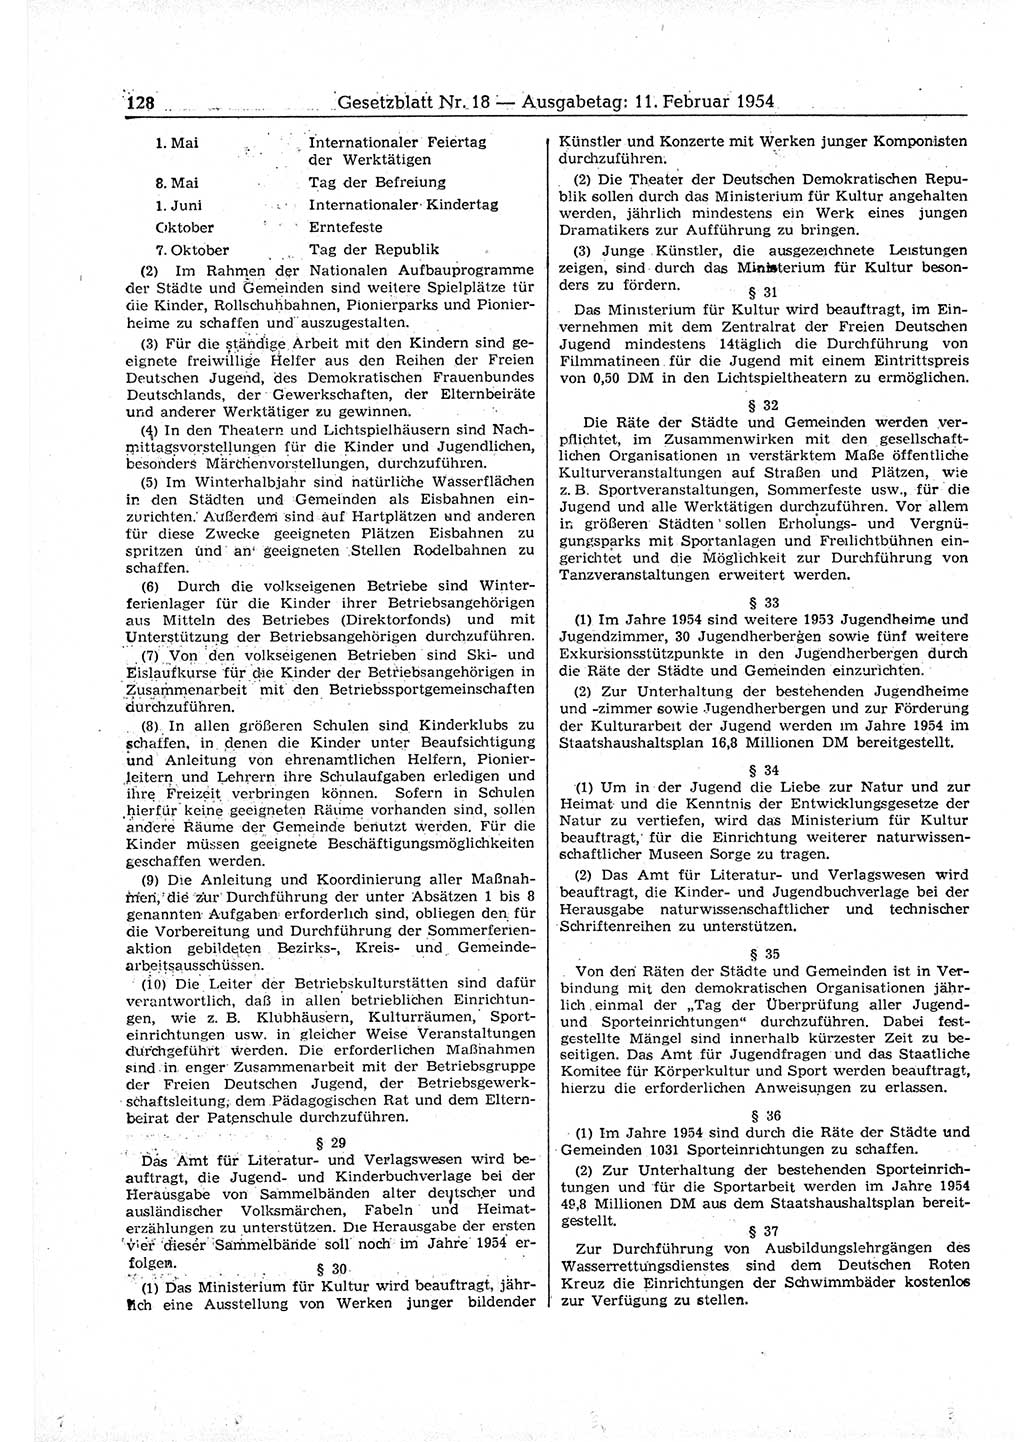 Gesetzblatt (GBl.) der Deutschen Demokratischen Republik (DDR) 1954, Seite 128 (GBl. DDR 1954, S. 128)